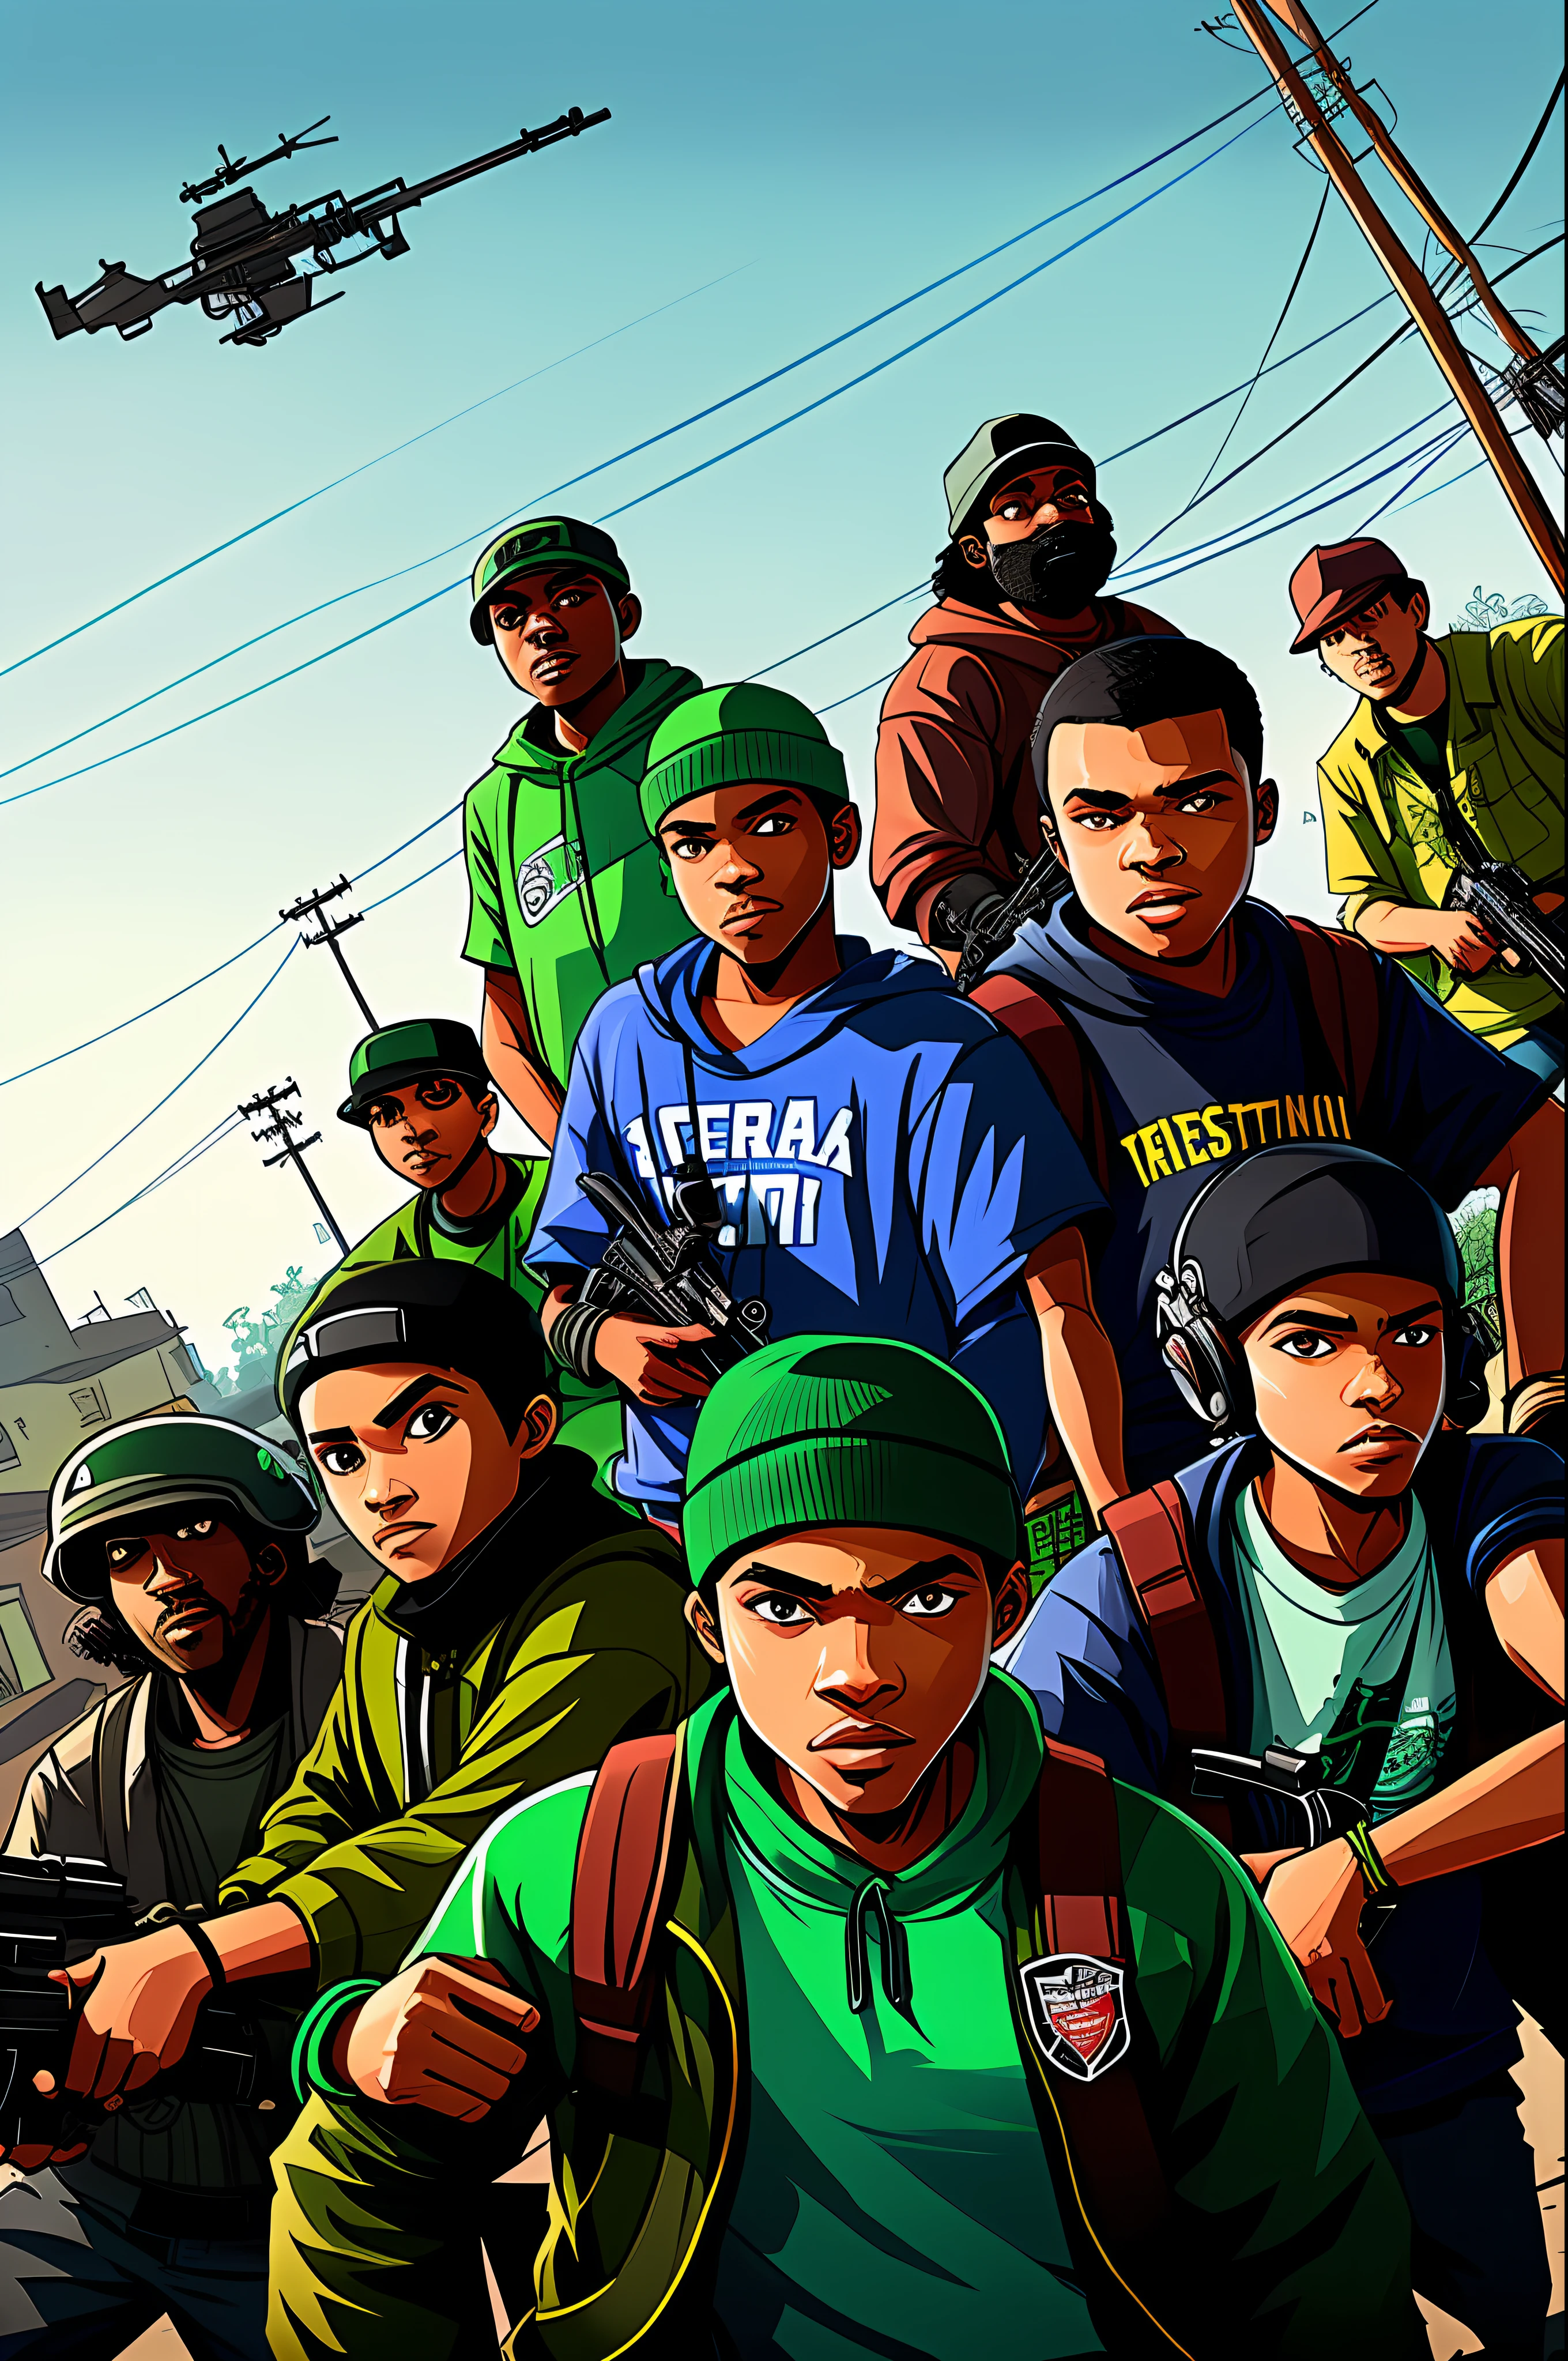 Criar uma ilustração que mostre um membro de Grove Street Families, a gangue protagonista do jogo, em uma batalha de tiroteio contra membros de gangues rivais, em um beco escuro e sombrio.